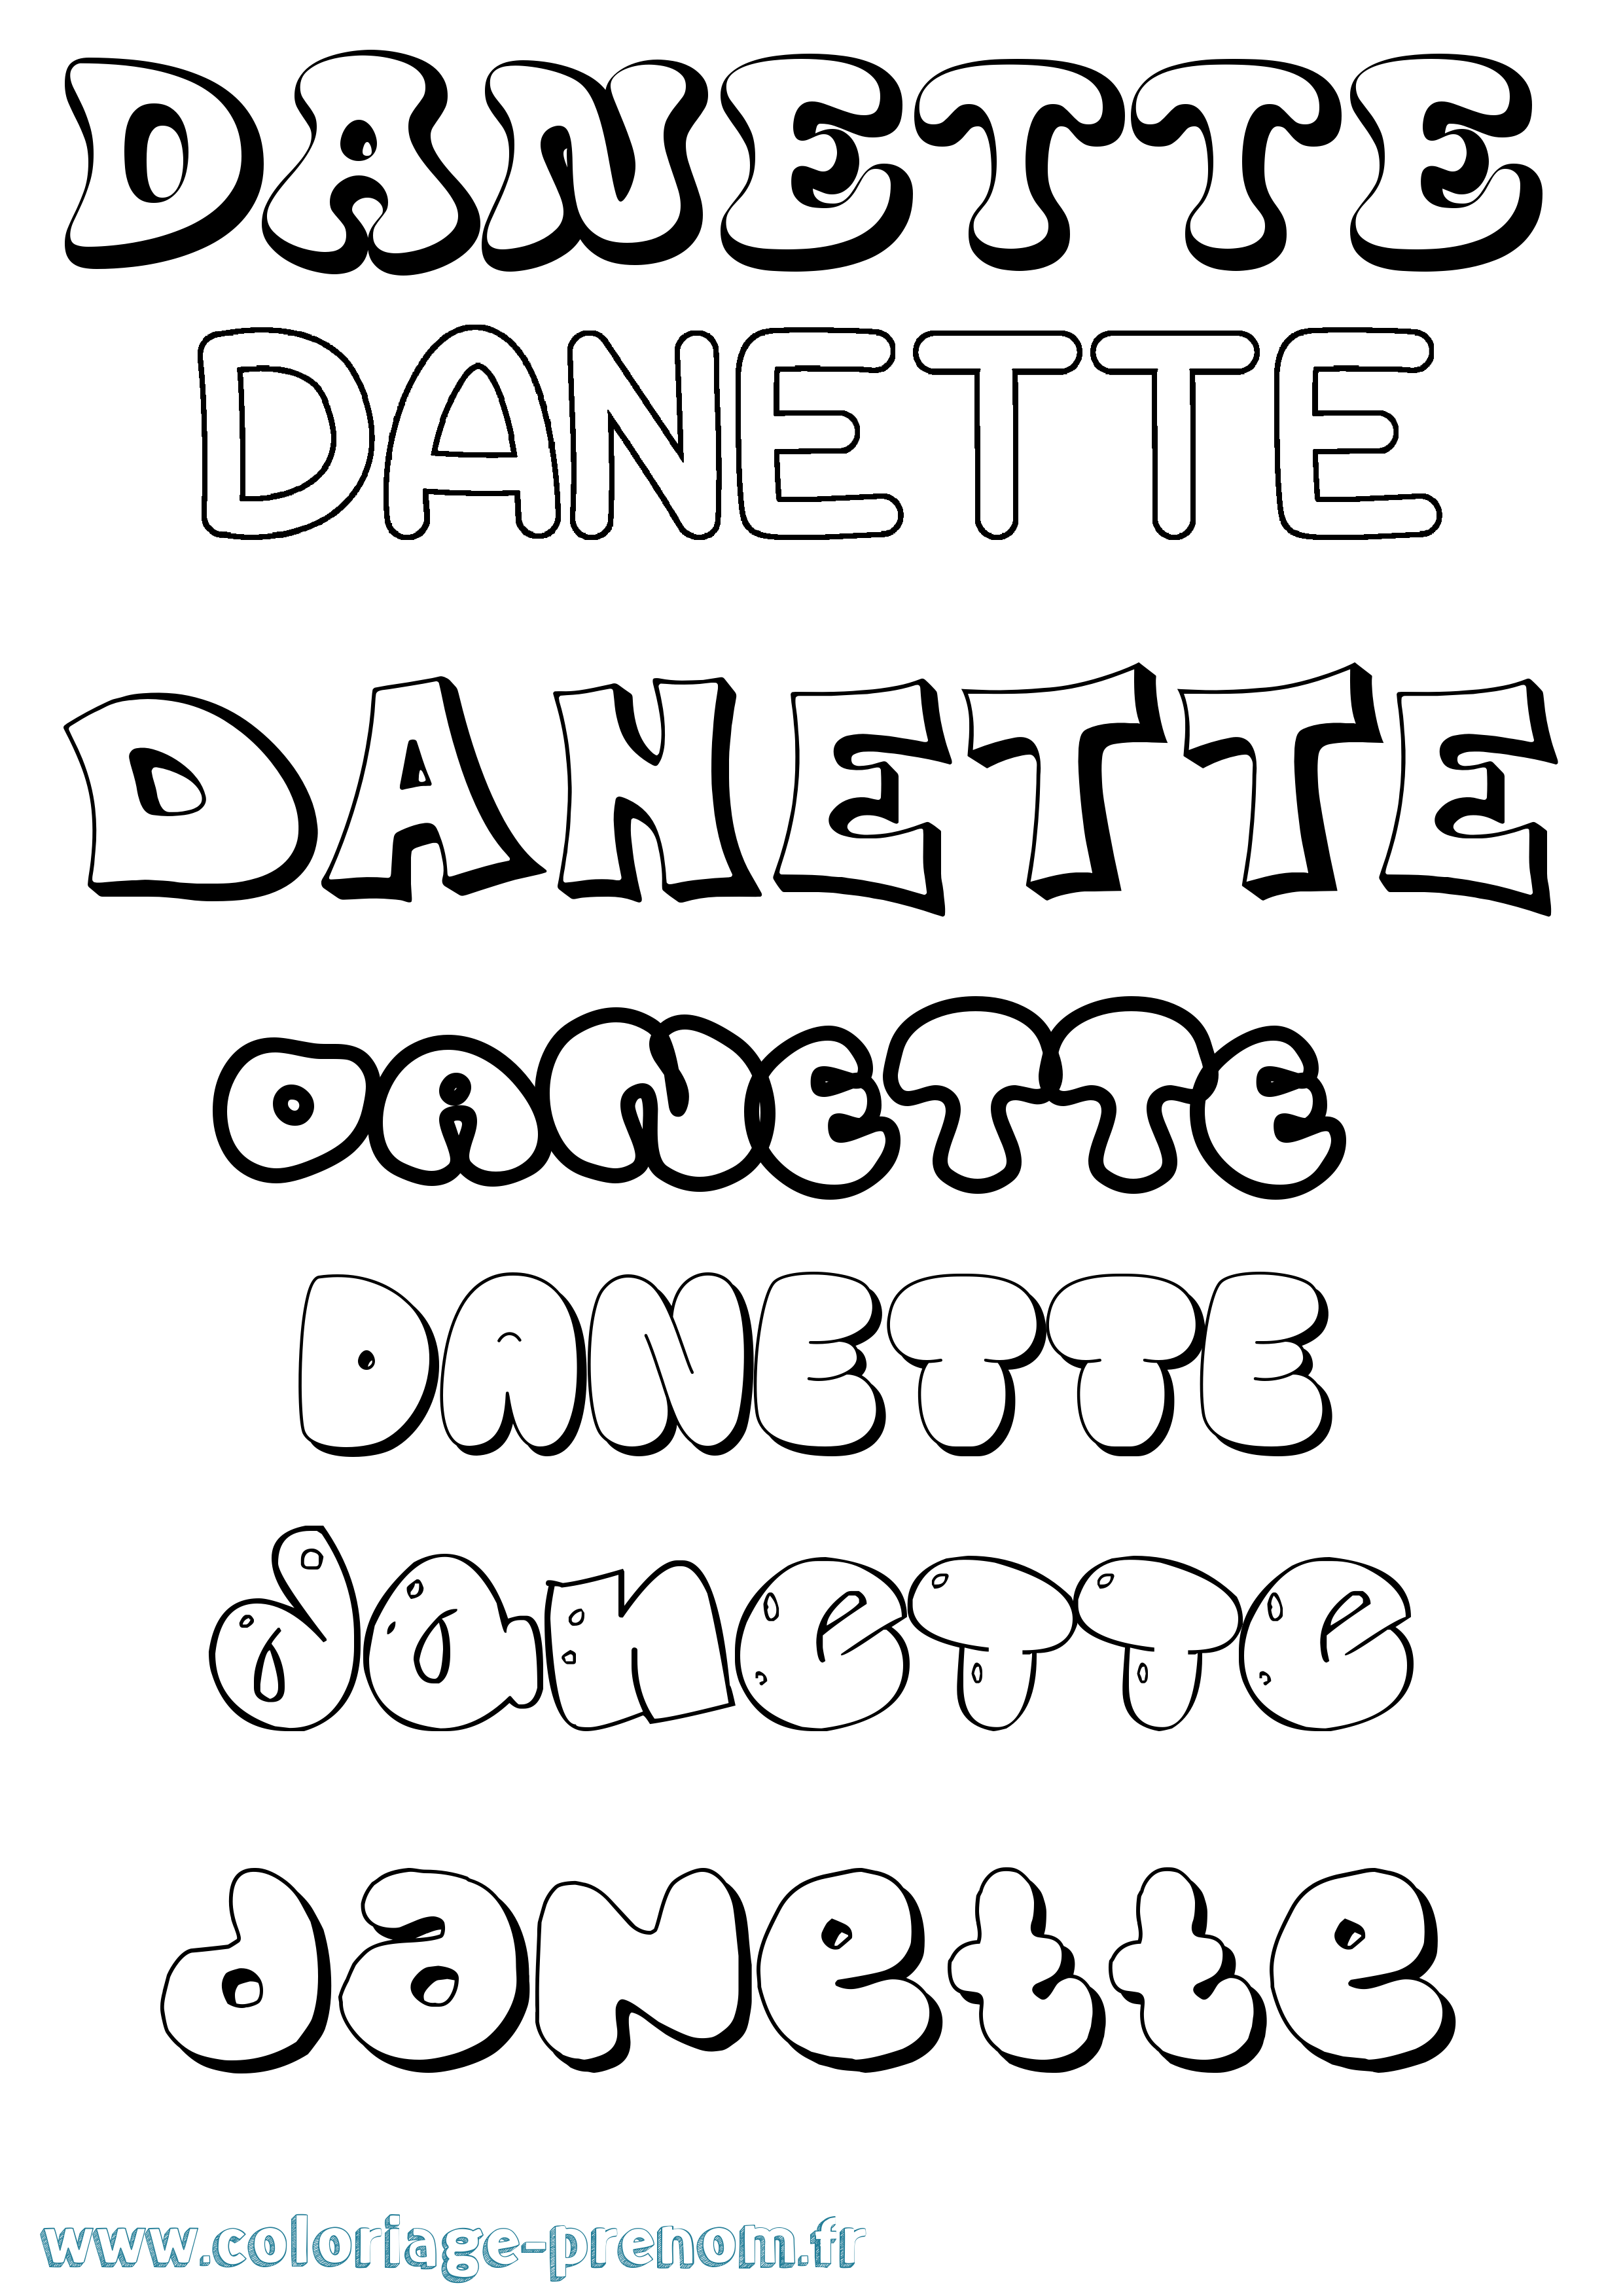 Coloriage prénom Danette Bubble